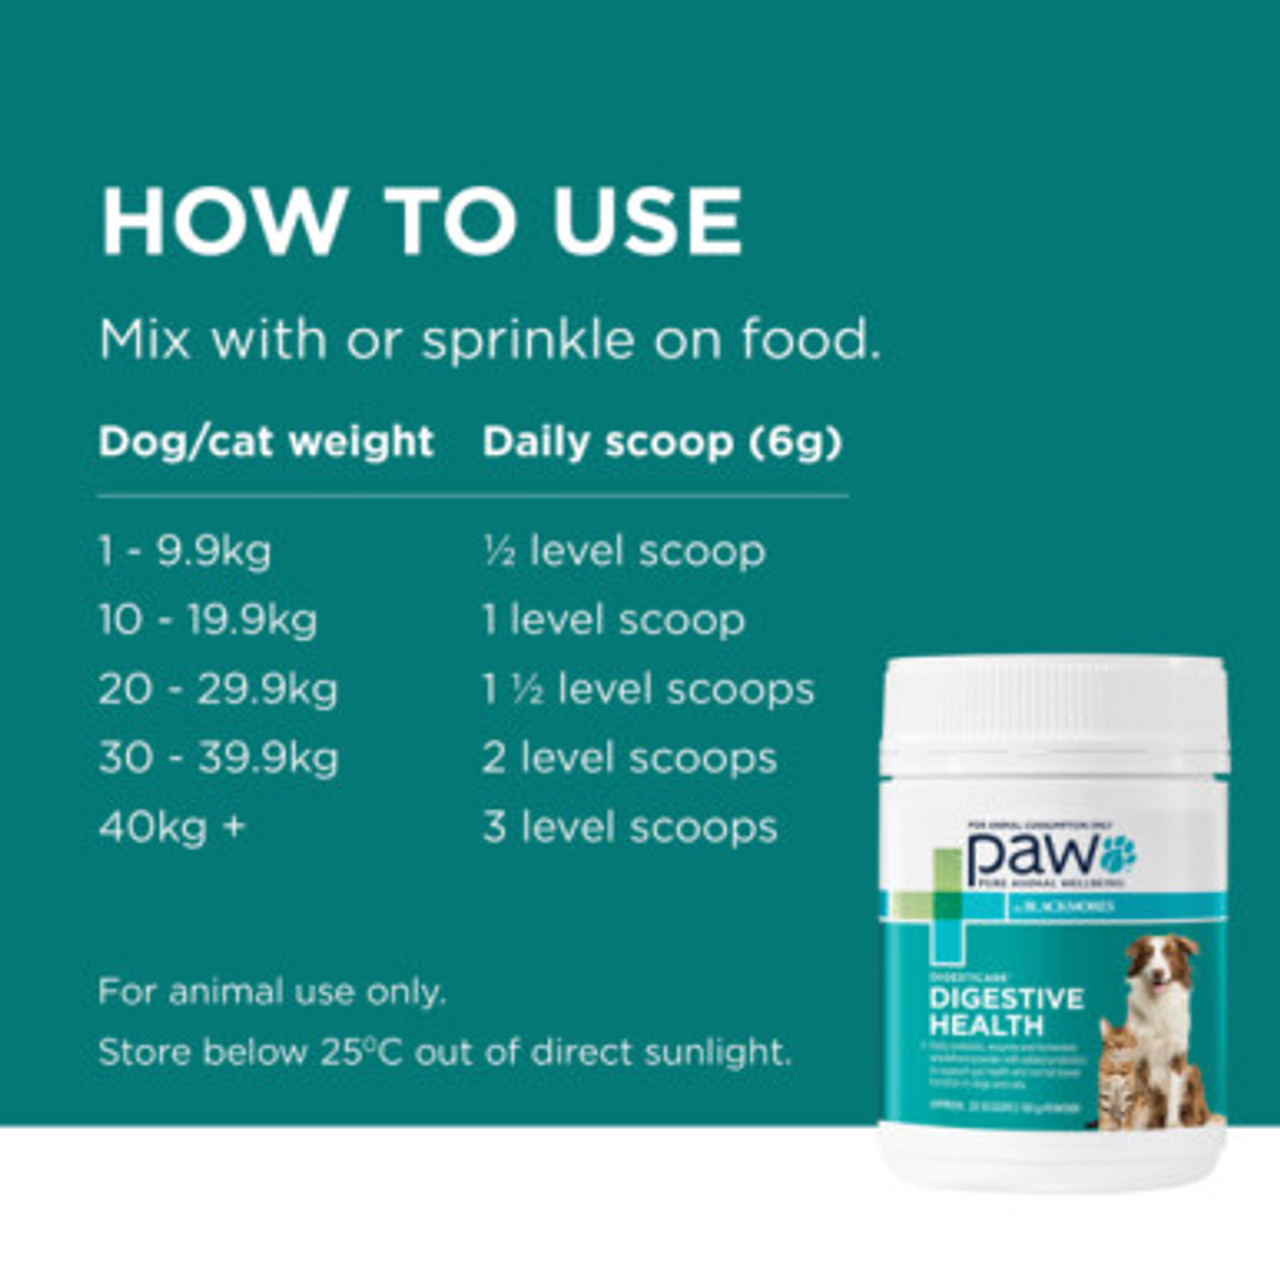 PAW By Blackmores DigestiCare Probiotika för matsmältningshälsa för hundar och katter 150 g